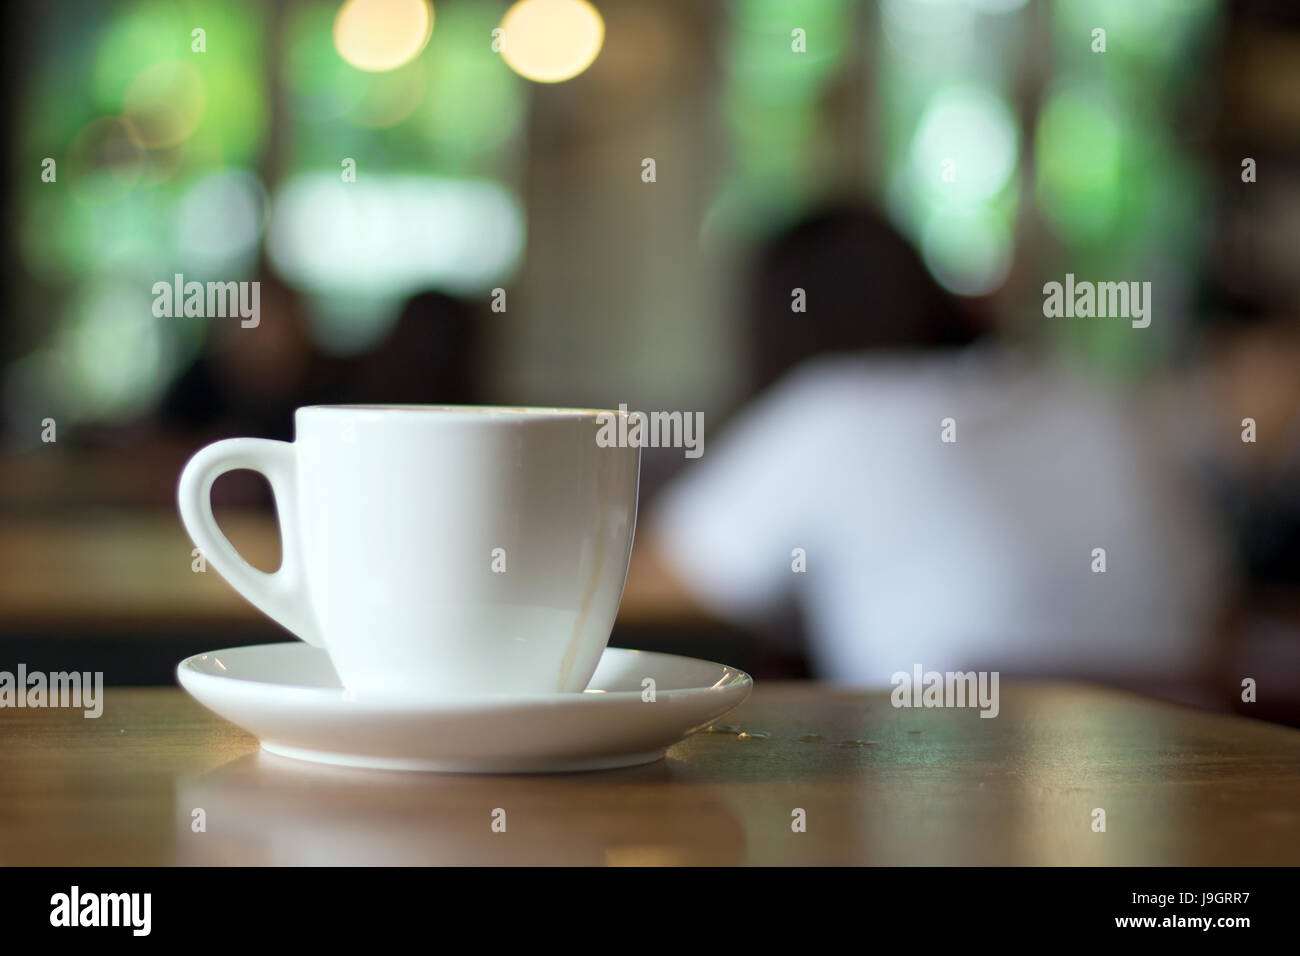 Sélectionnez l'accent sur hot coffee mug cappuccino sur table en bois dans la région de matin Banque D'Images